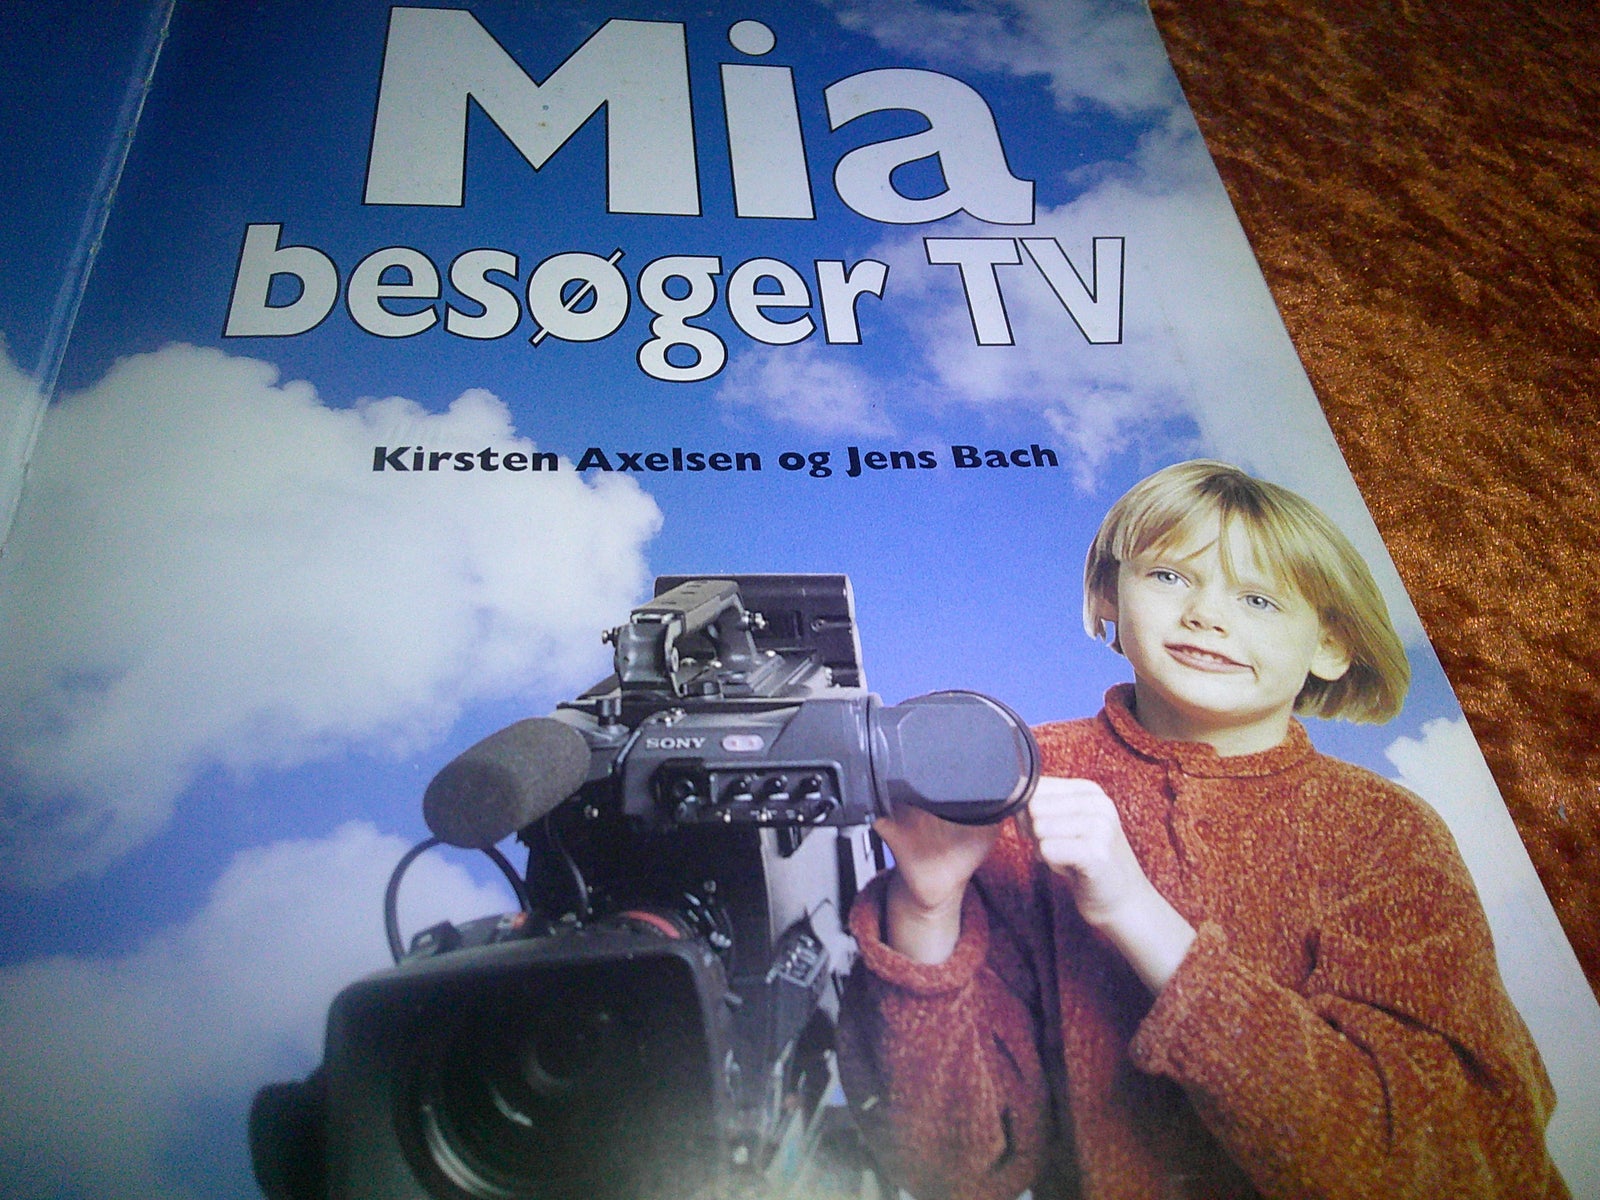 Mia besøger TV, Kirsten Axelsen